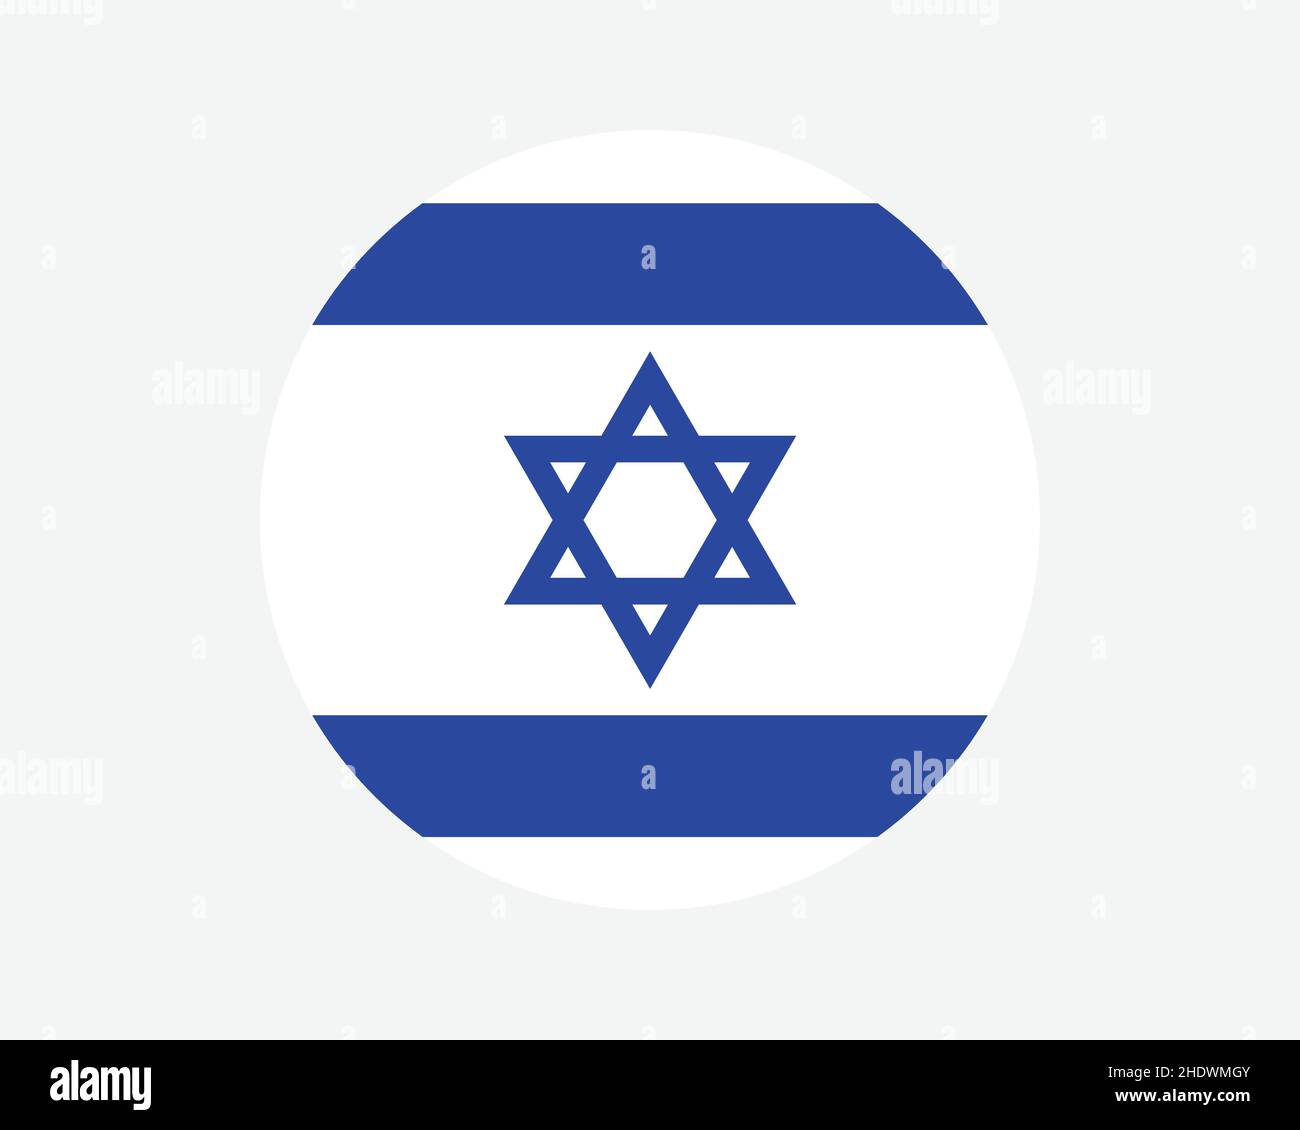 Israel Round Country Flagge. Israelische Kreis Nationalflagge. Kreisförmiges Knopfbanner des Staates Israel. EPS-Vektorgrafik. Stock Vektor